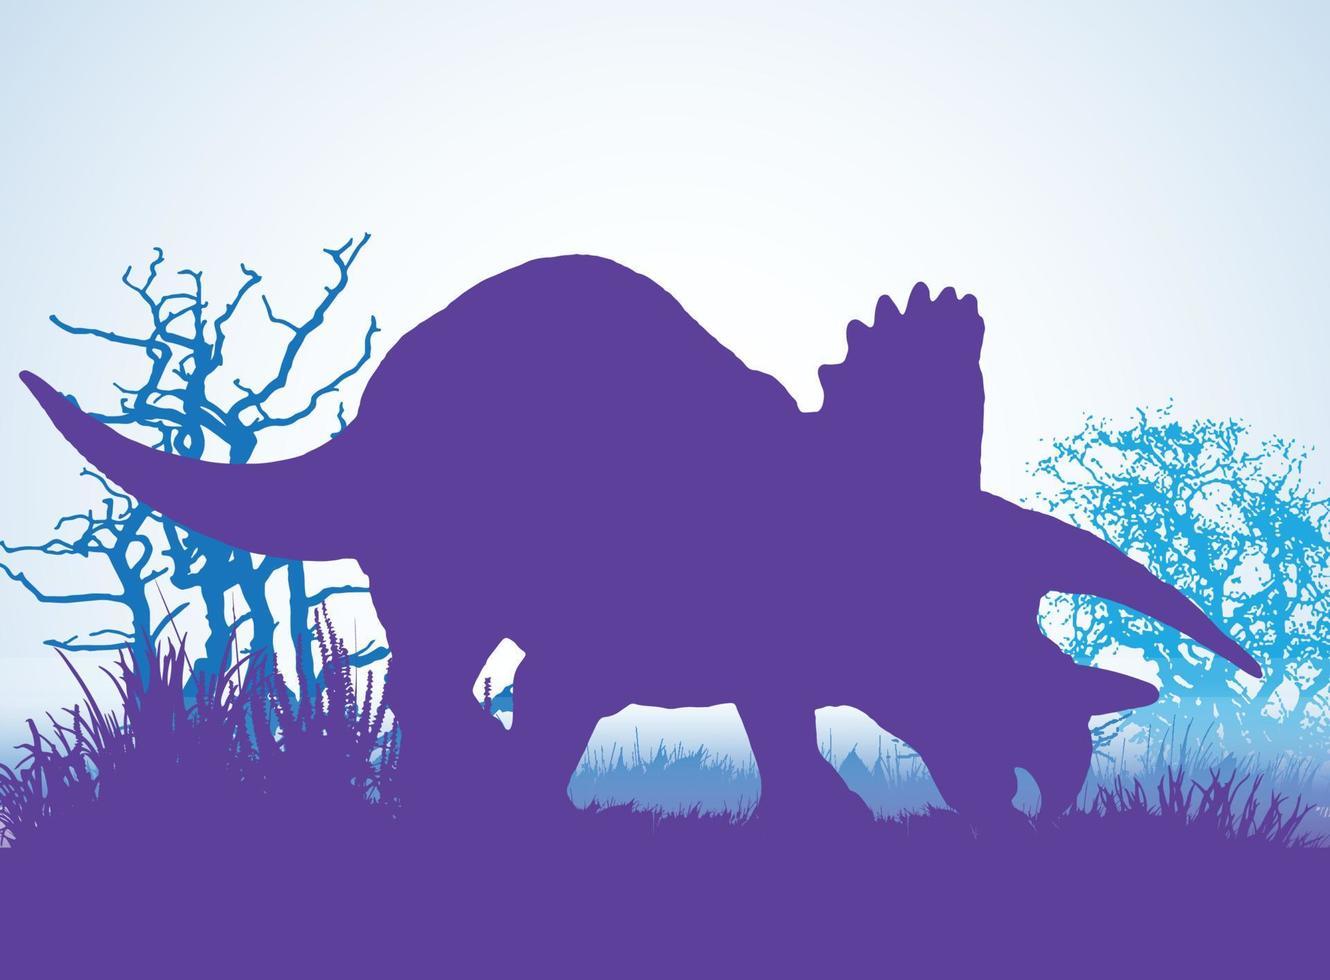 triceratops dinosaurussen silhouetten in prehistorische omgeving overlappende lagen decoratieve achtergrond banner abstracte vectorillustratie vector